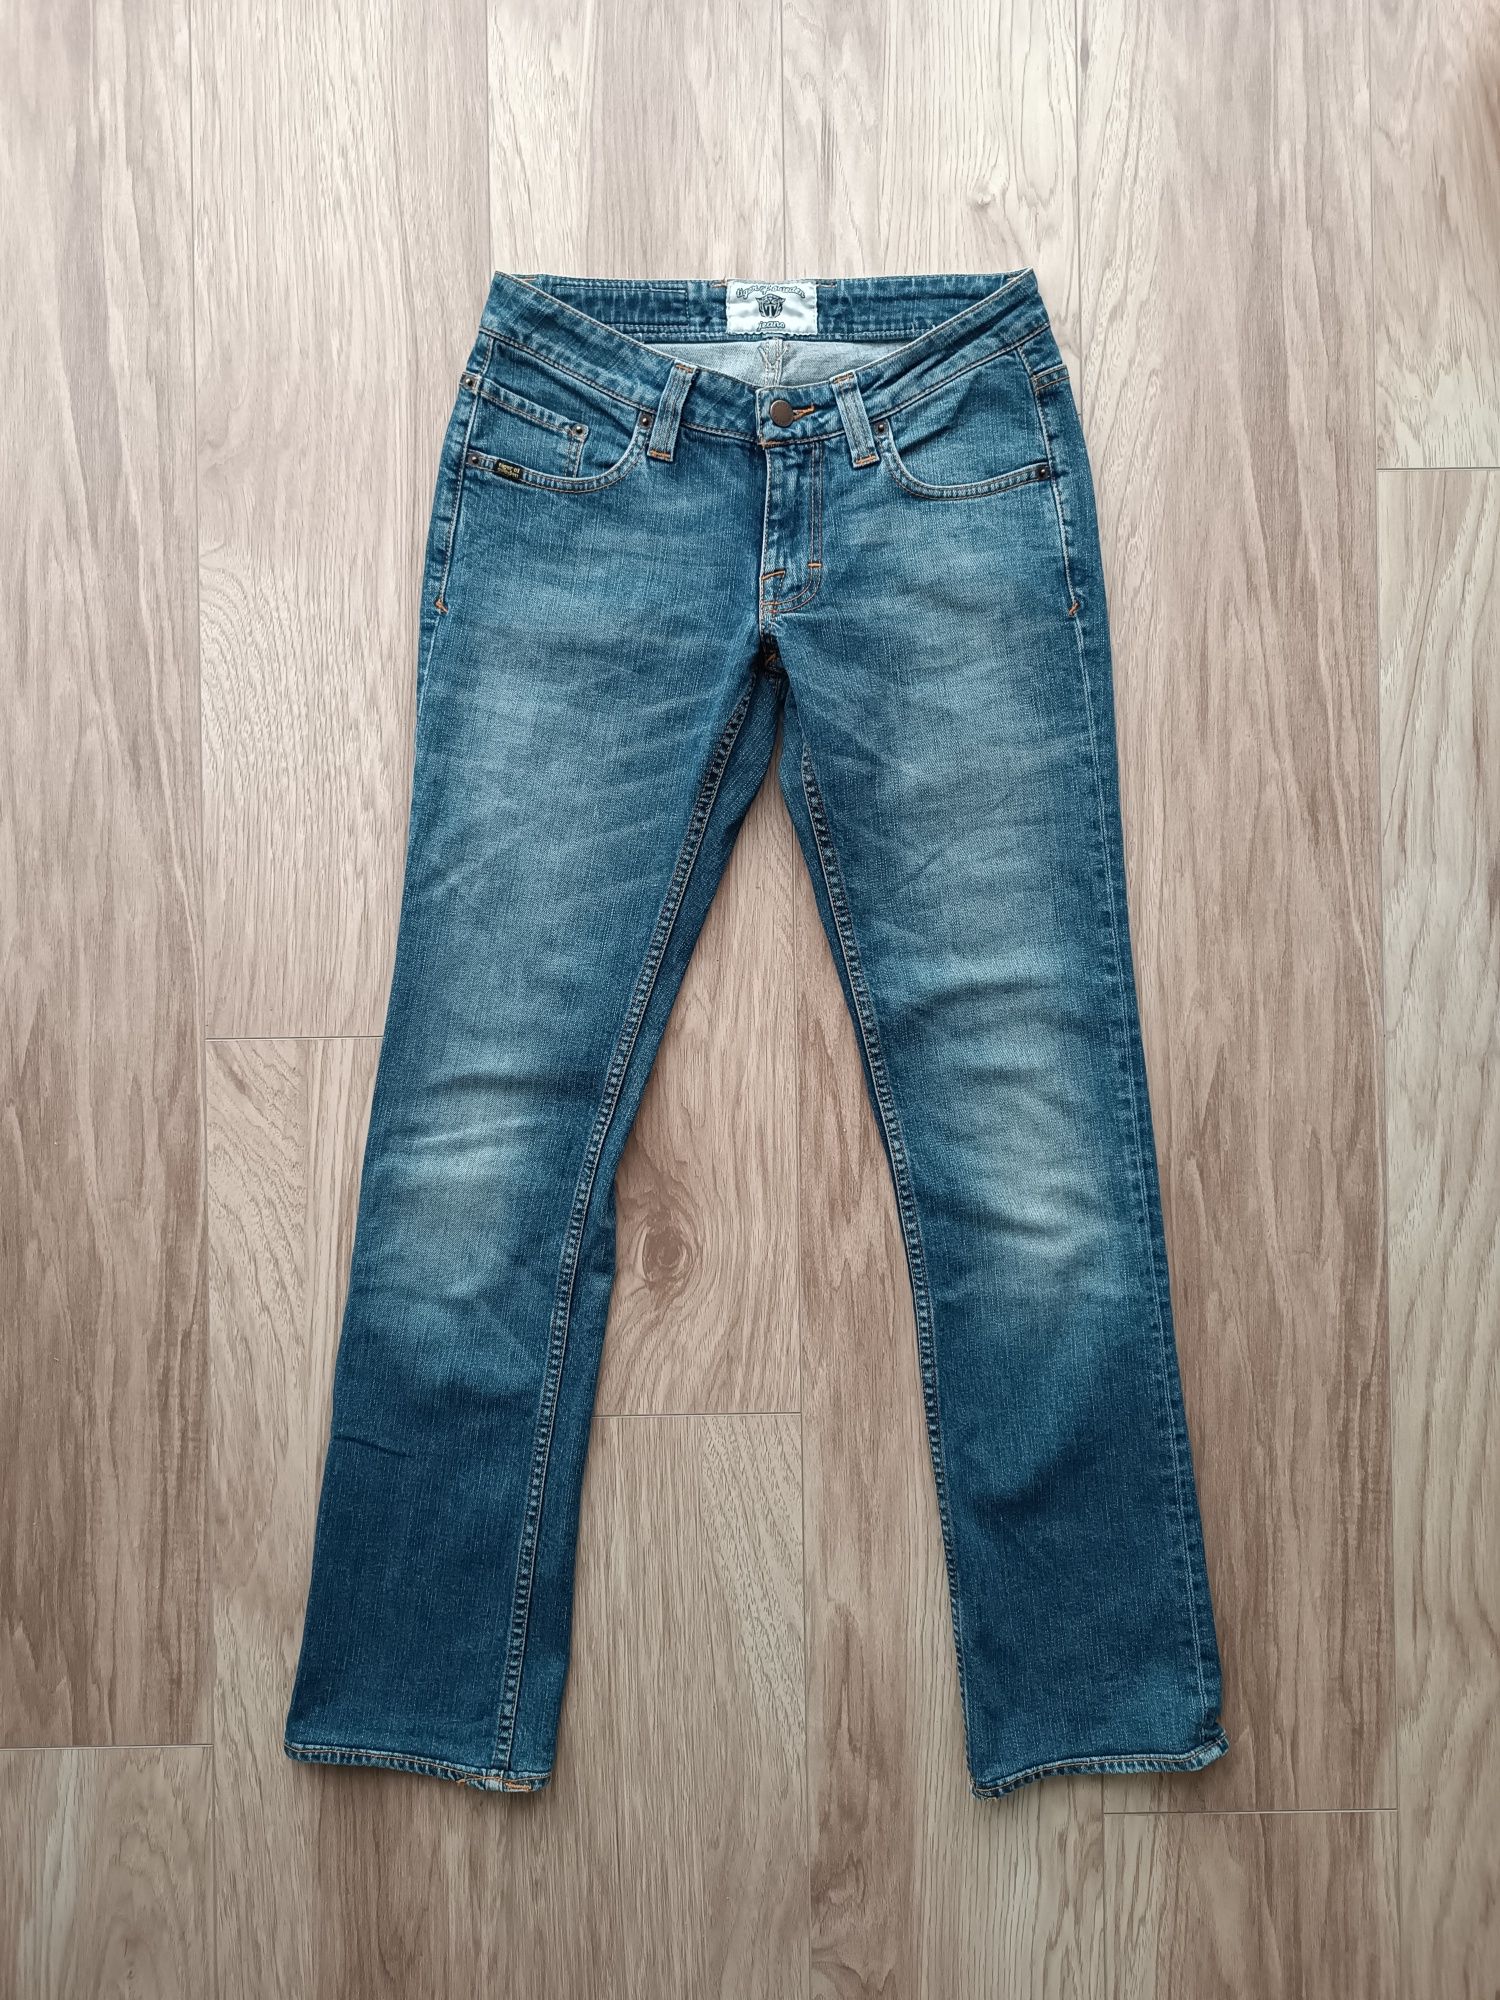 Niebieskie jeansy biodrówki 34/36 xs/s